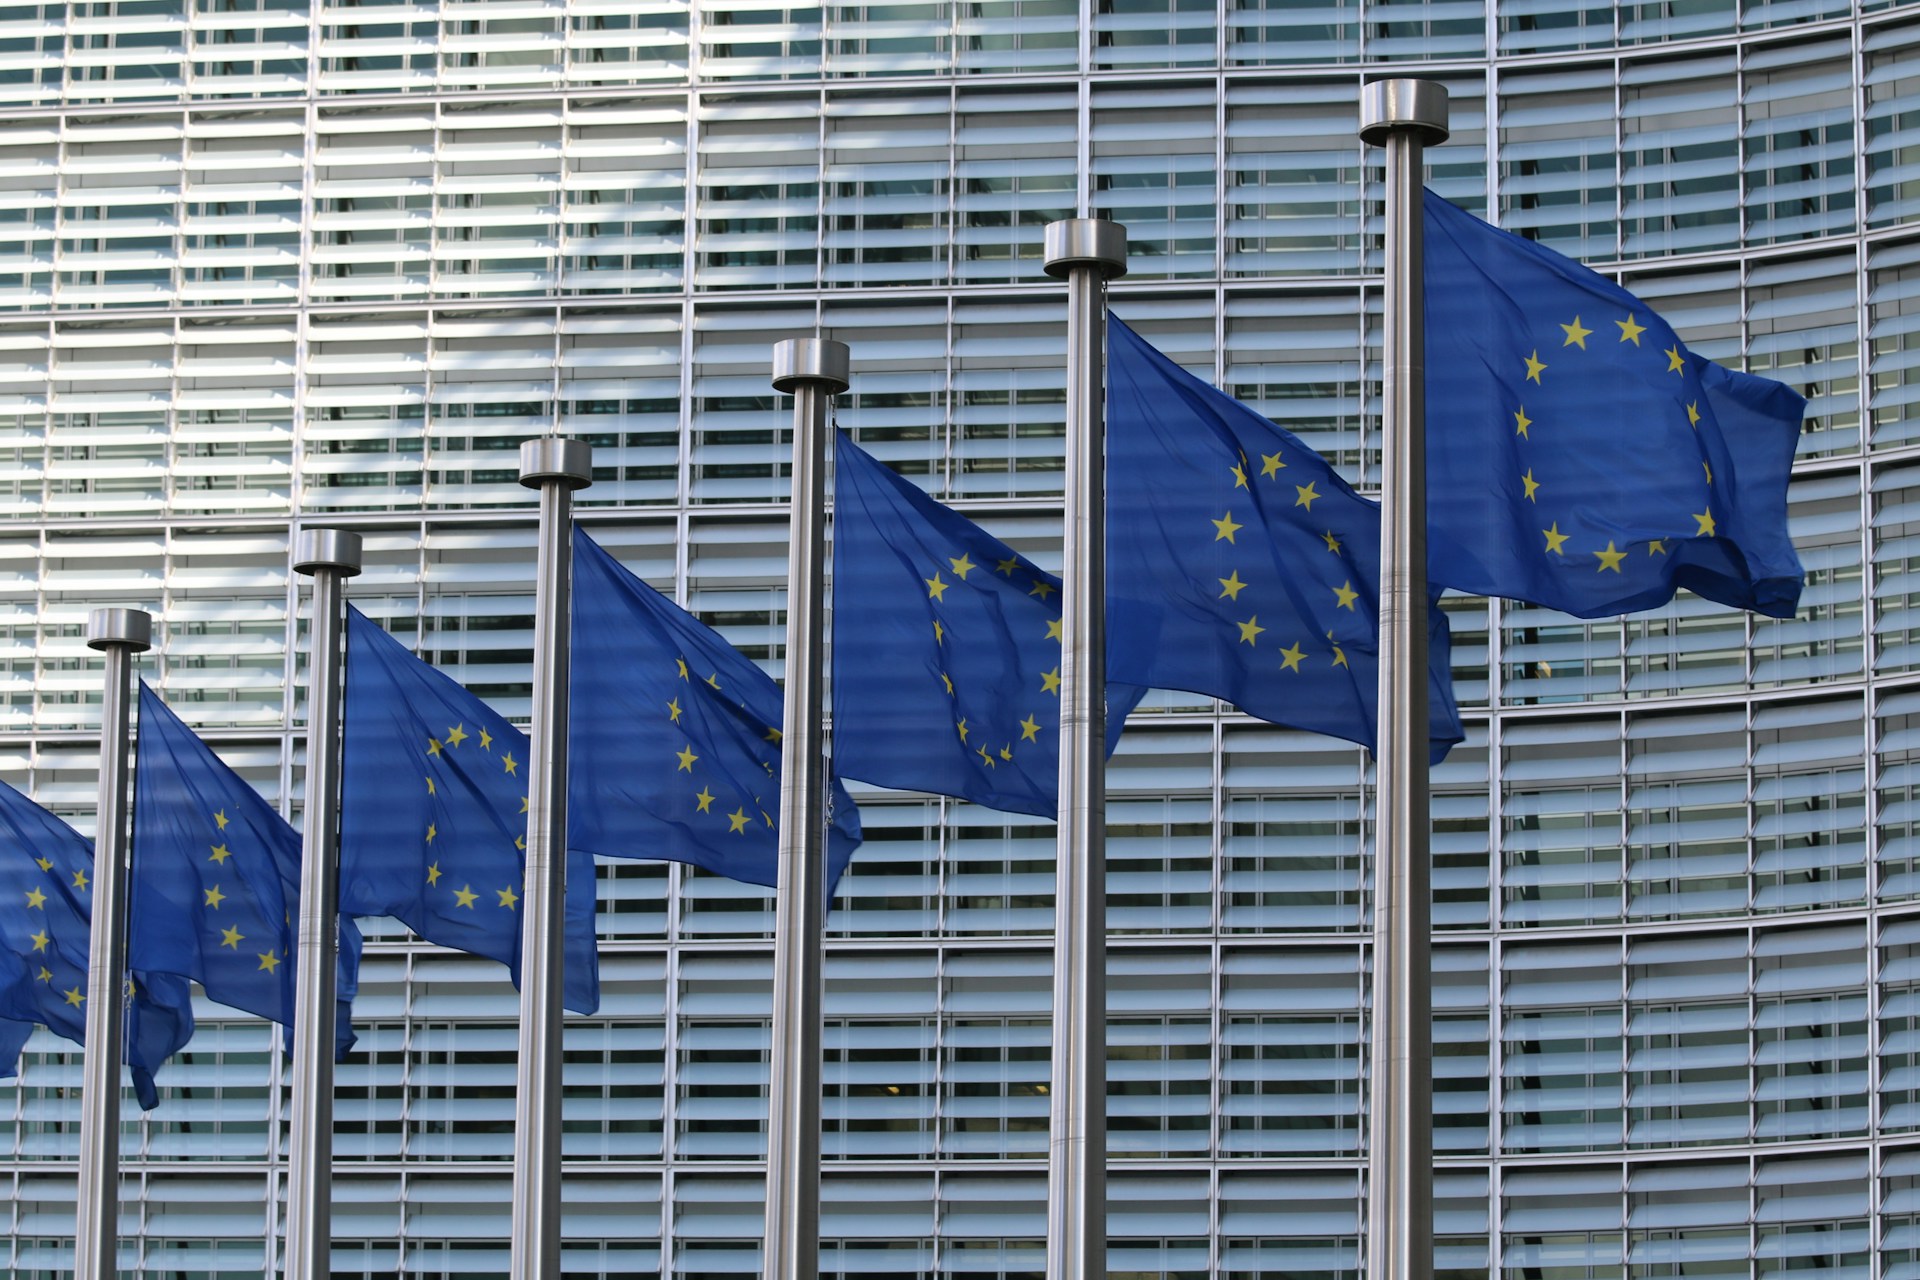 Hilera de banderas europeas frente al edificio del Parlamento Europeo